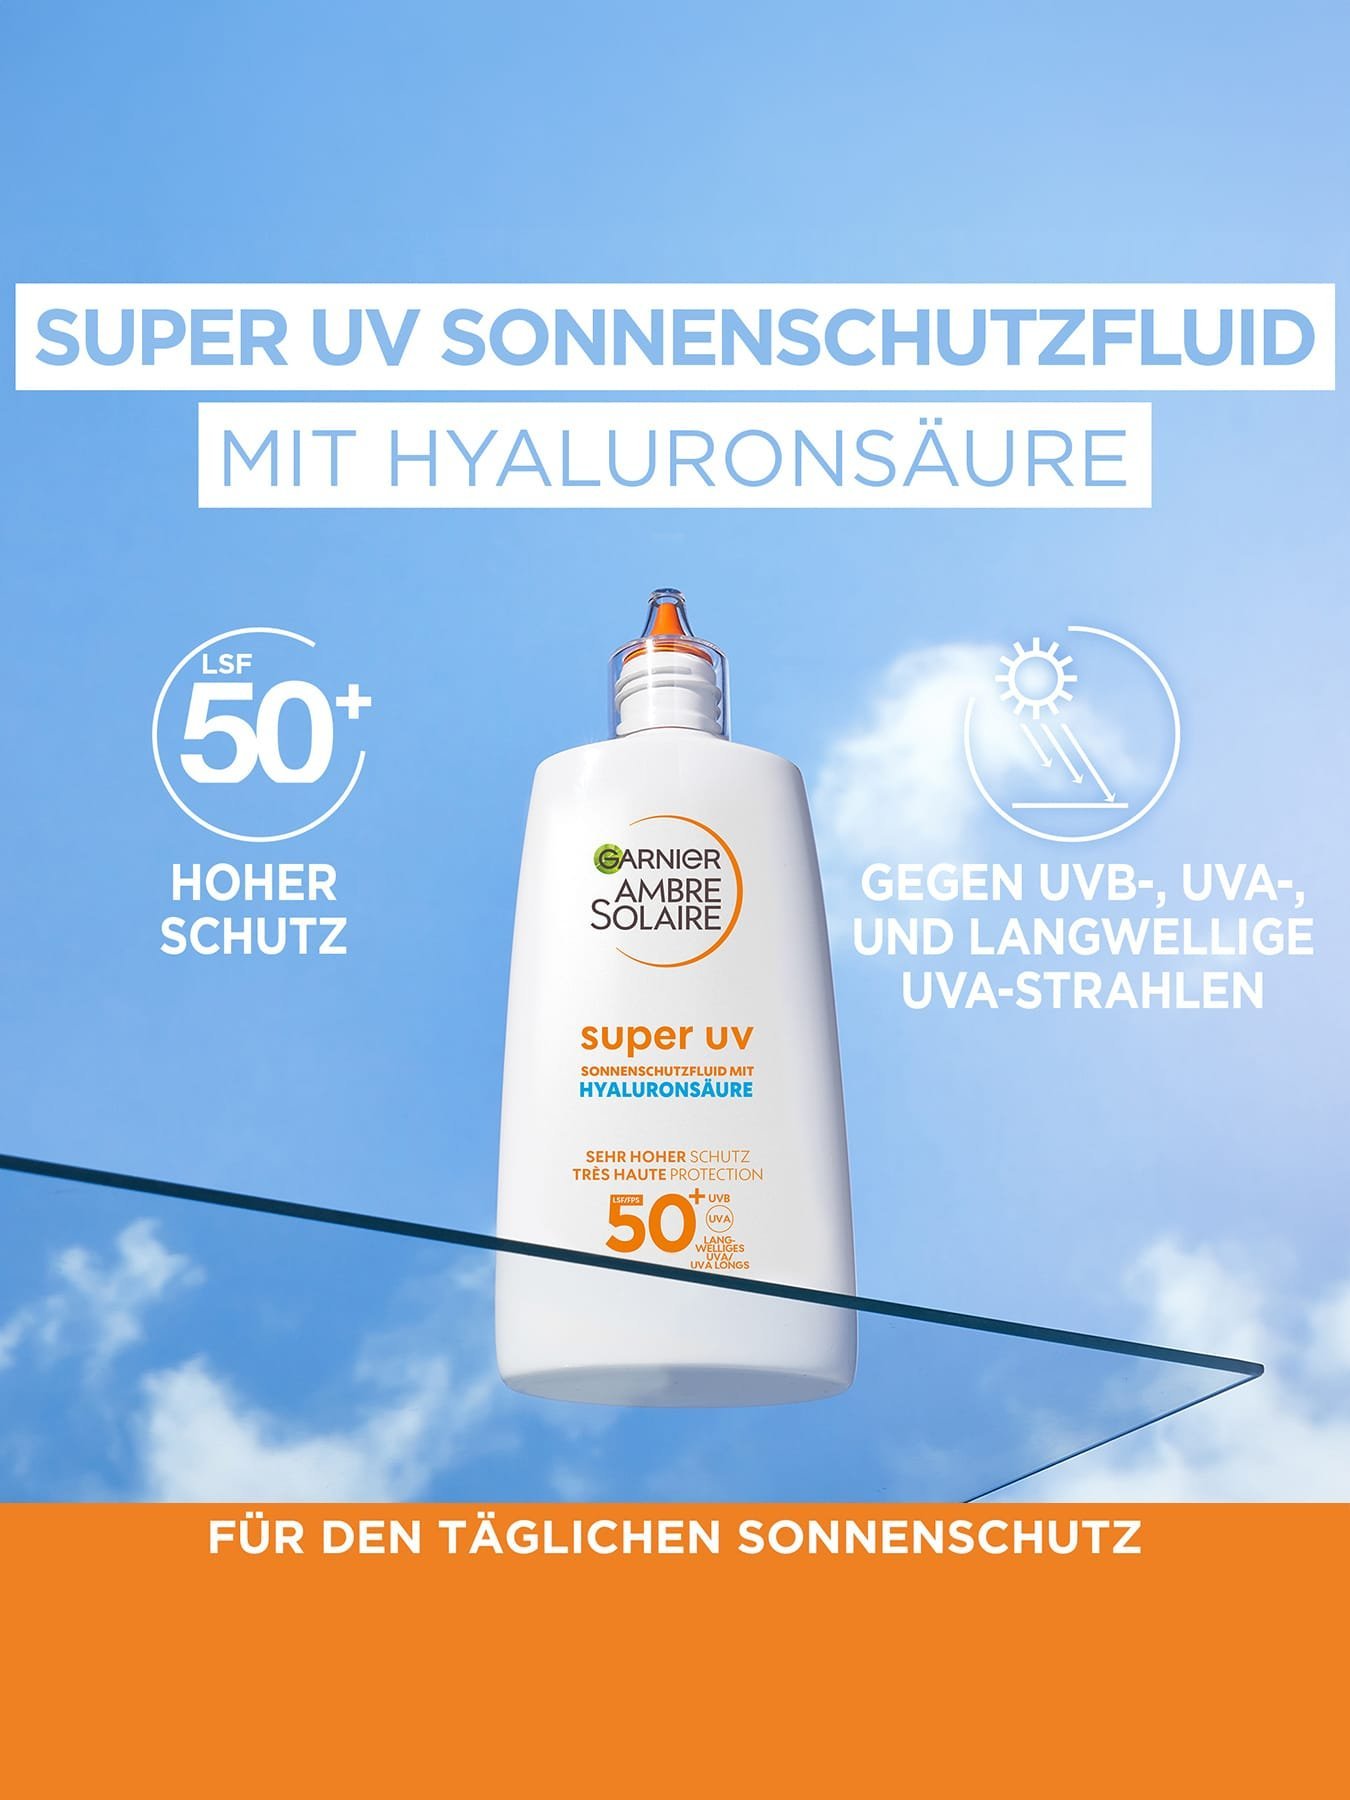 Super UV Sonnenschutz-Fluid - Produkt auf einer Glasplatte vor blauem Himmel